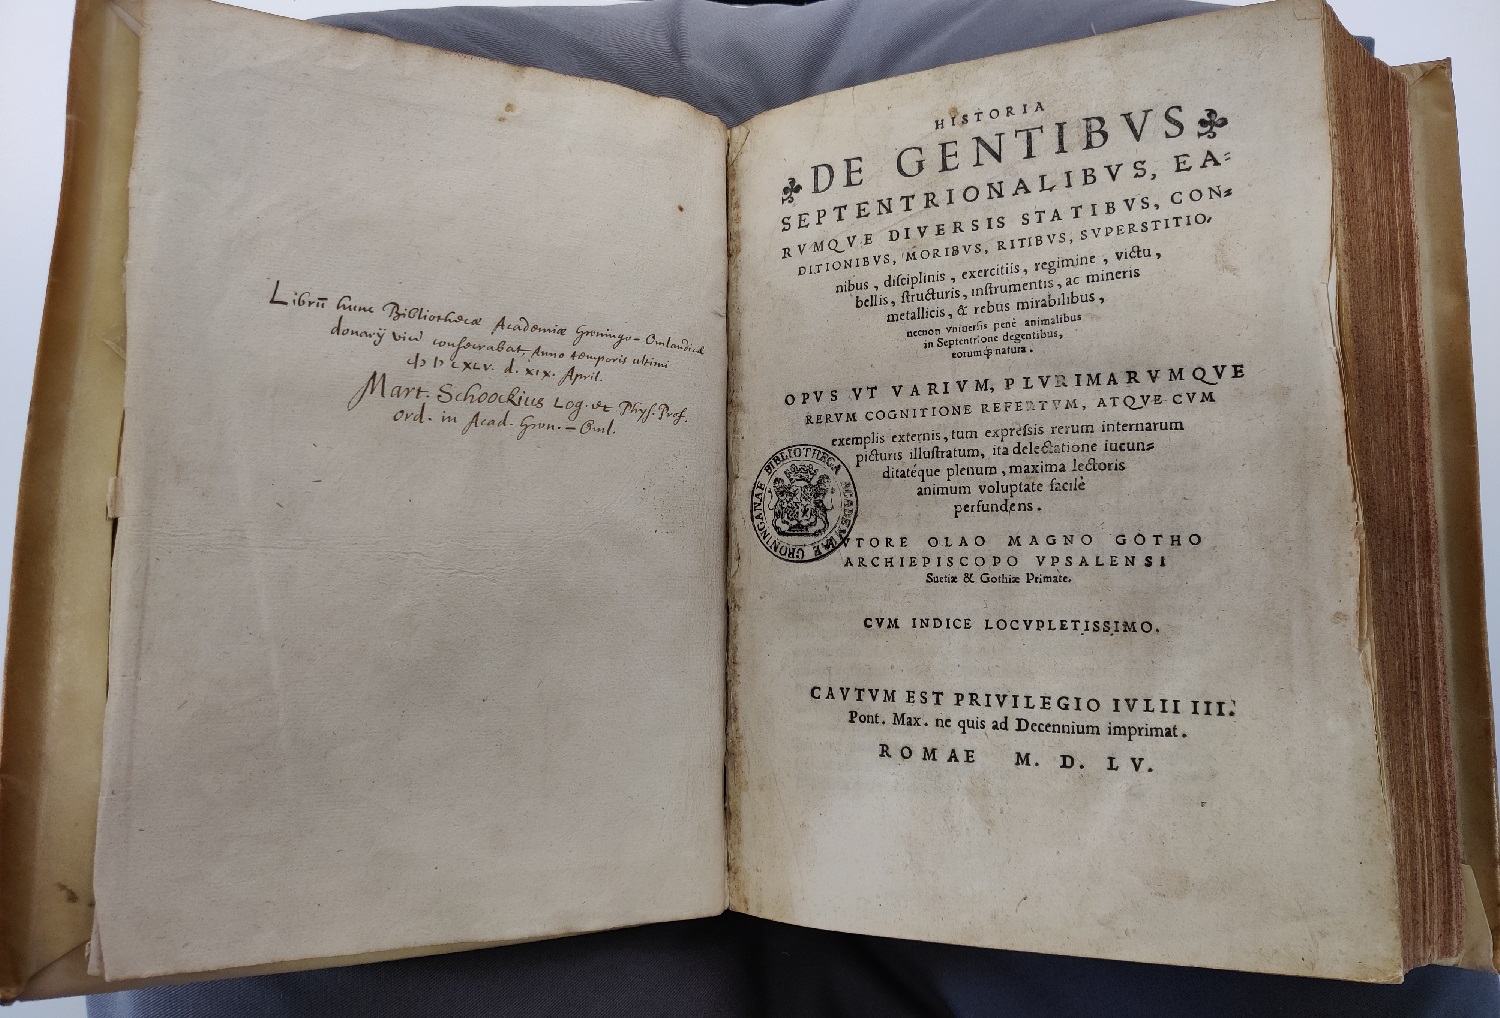 Afbeelding 2: Schutblad van de Historia De Gentibus Septentrionalibus met een inscriptie over de donatie van het boek aan de Universiteitsbibliotheek Groningen, en het titelblad